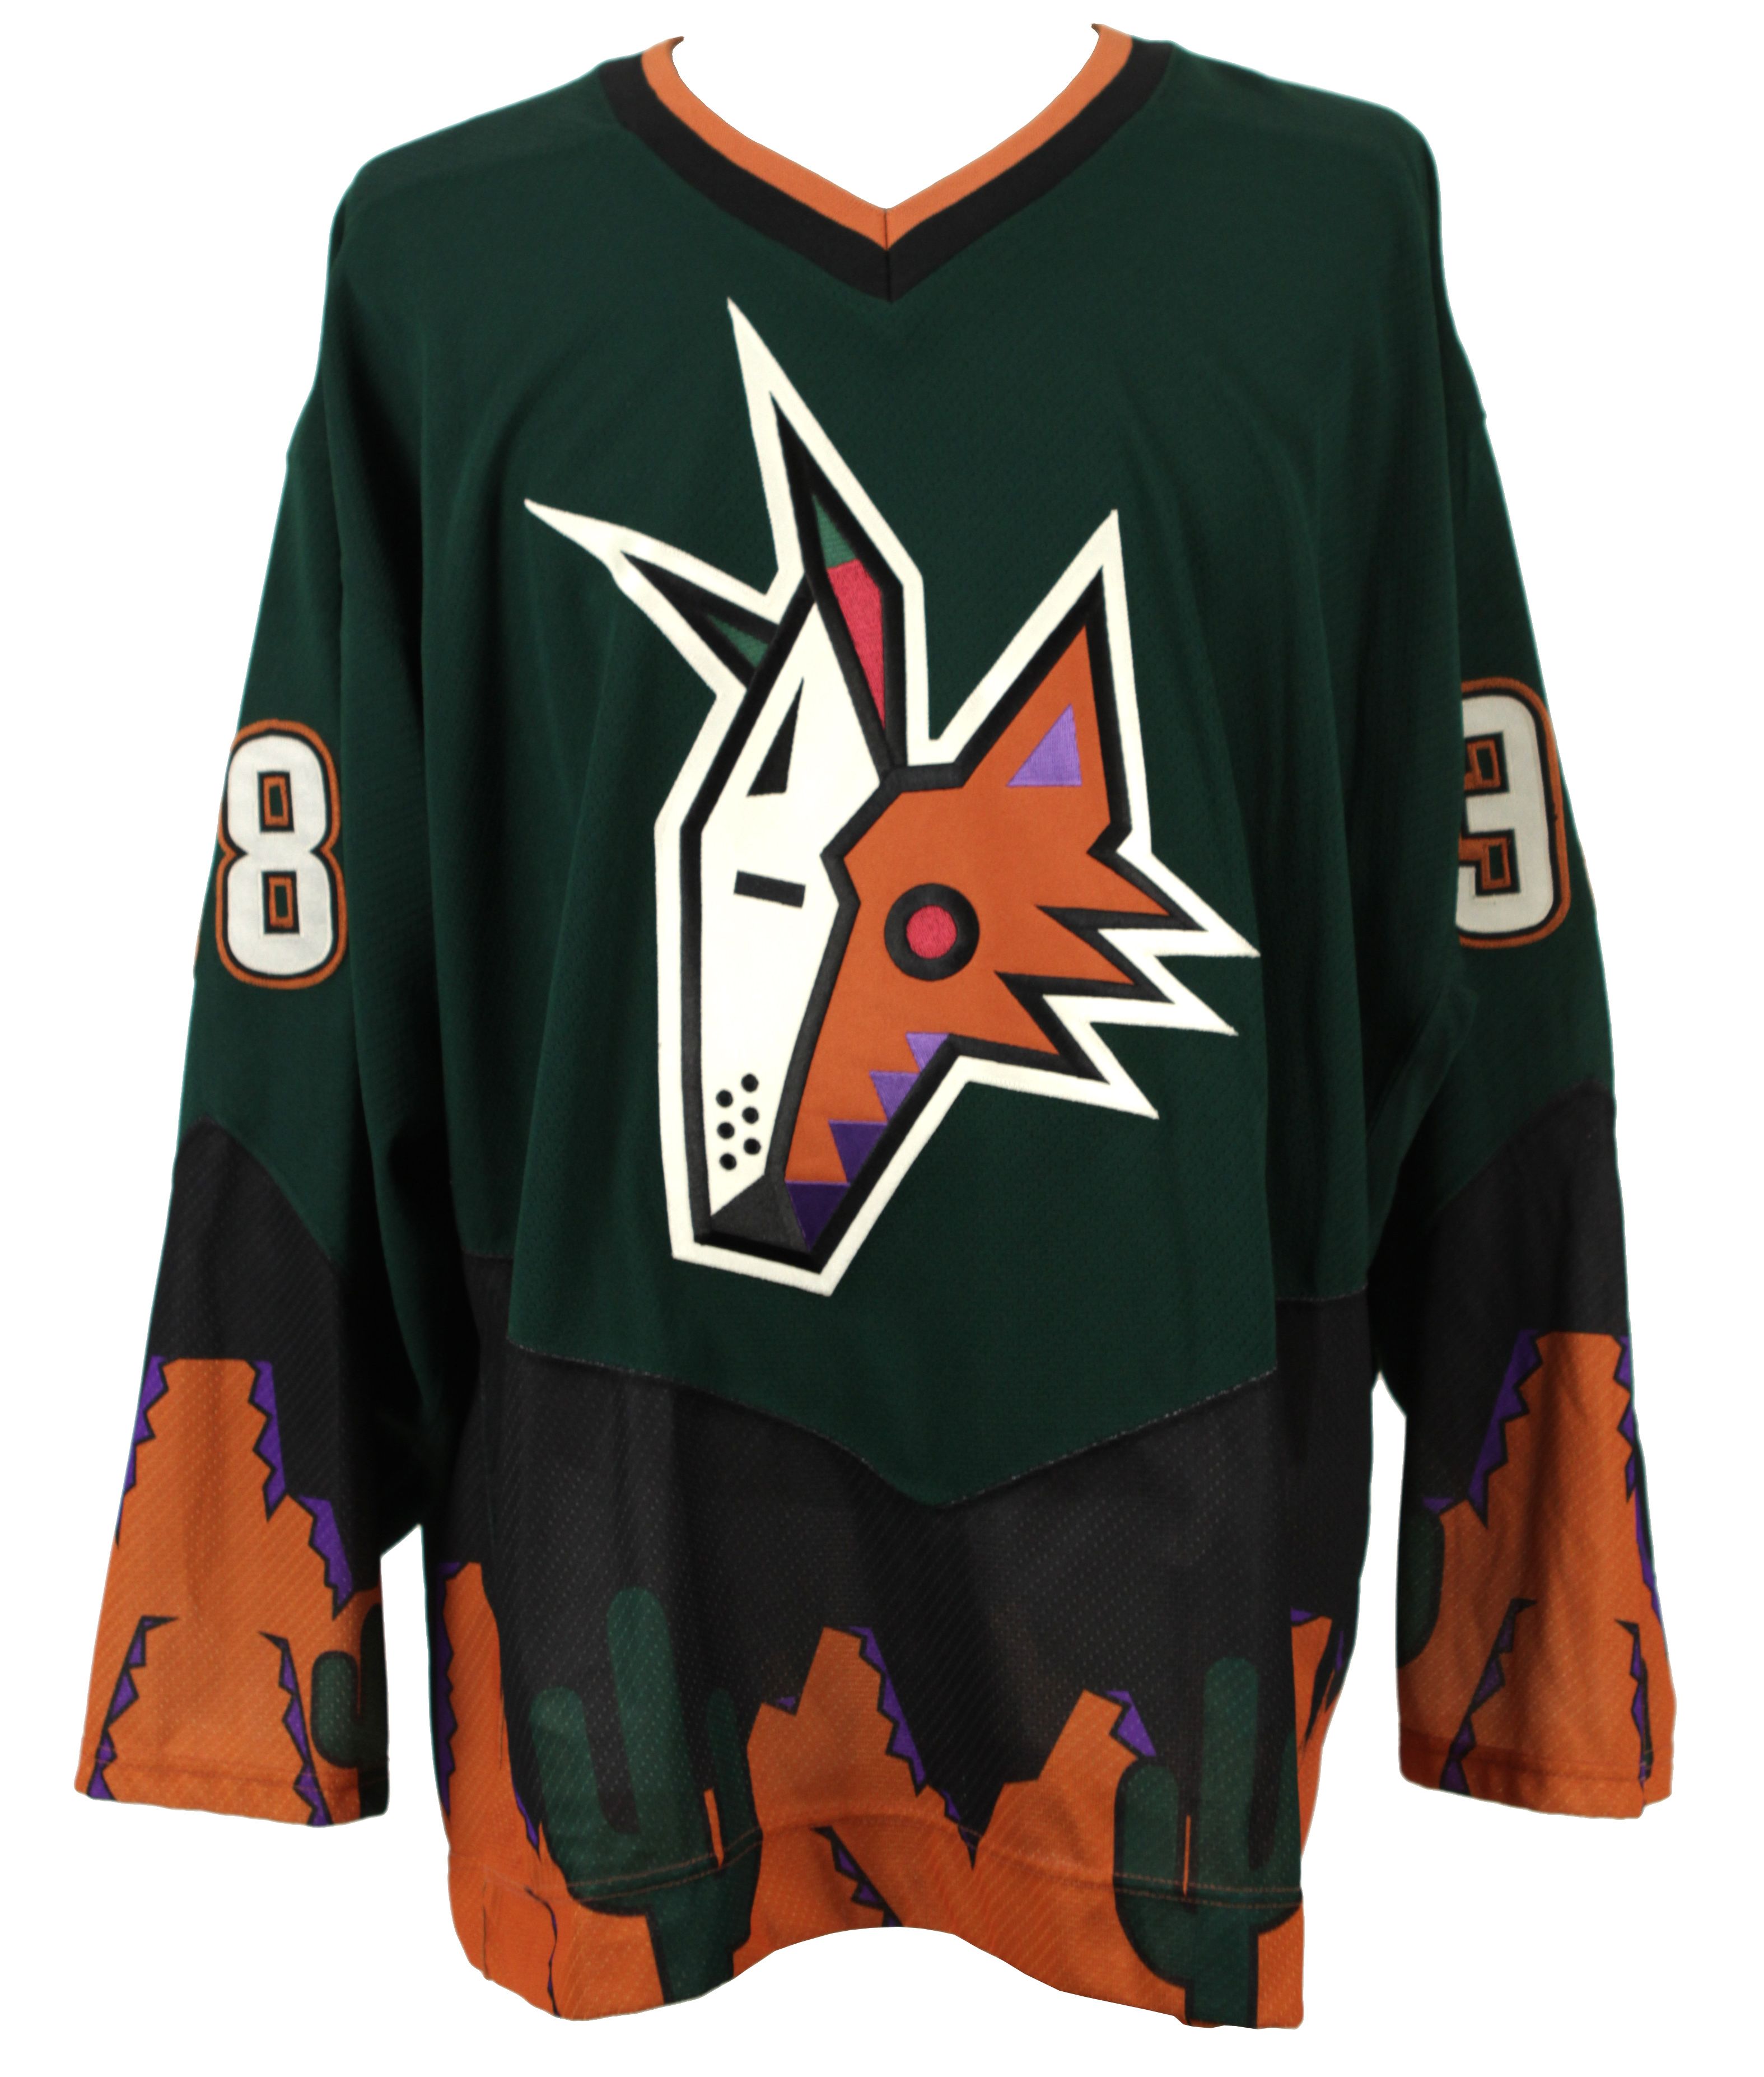 phoenix coyotes new jersey